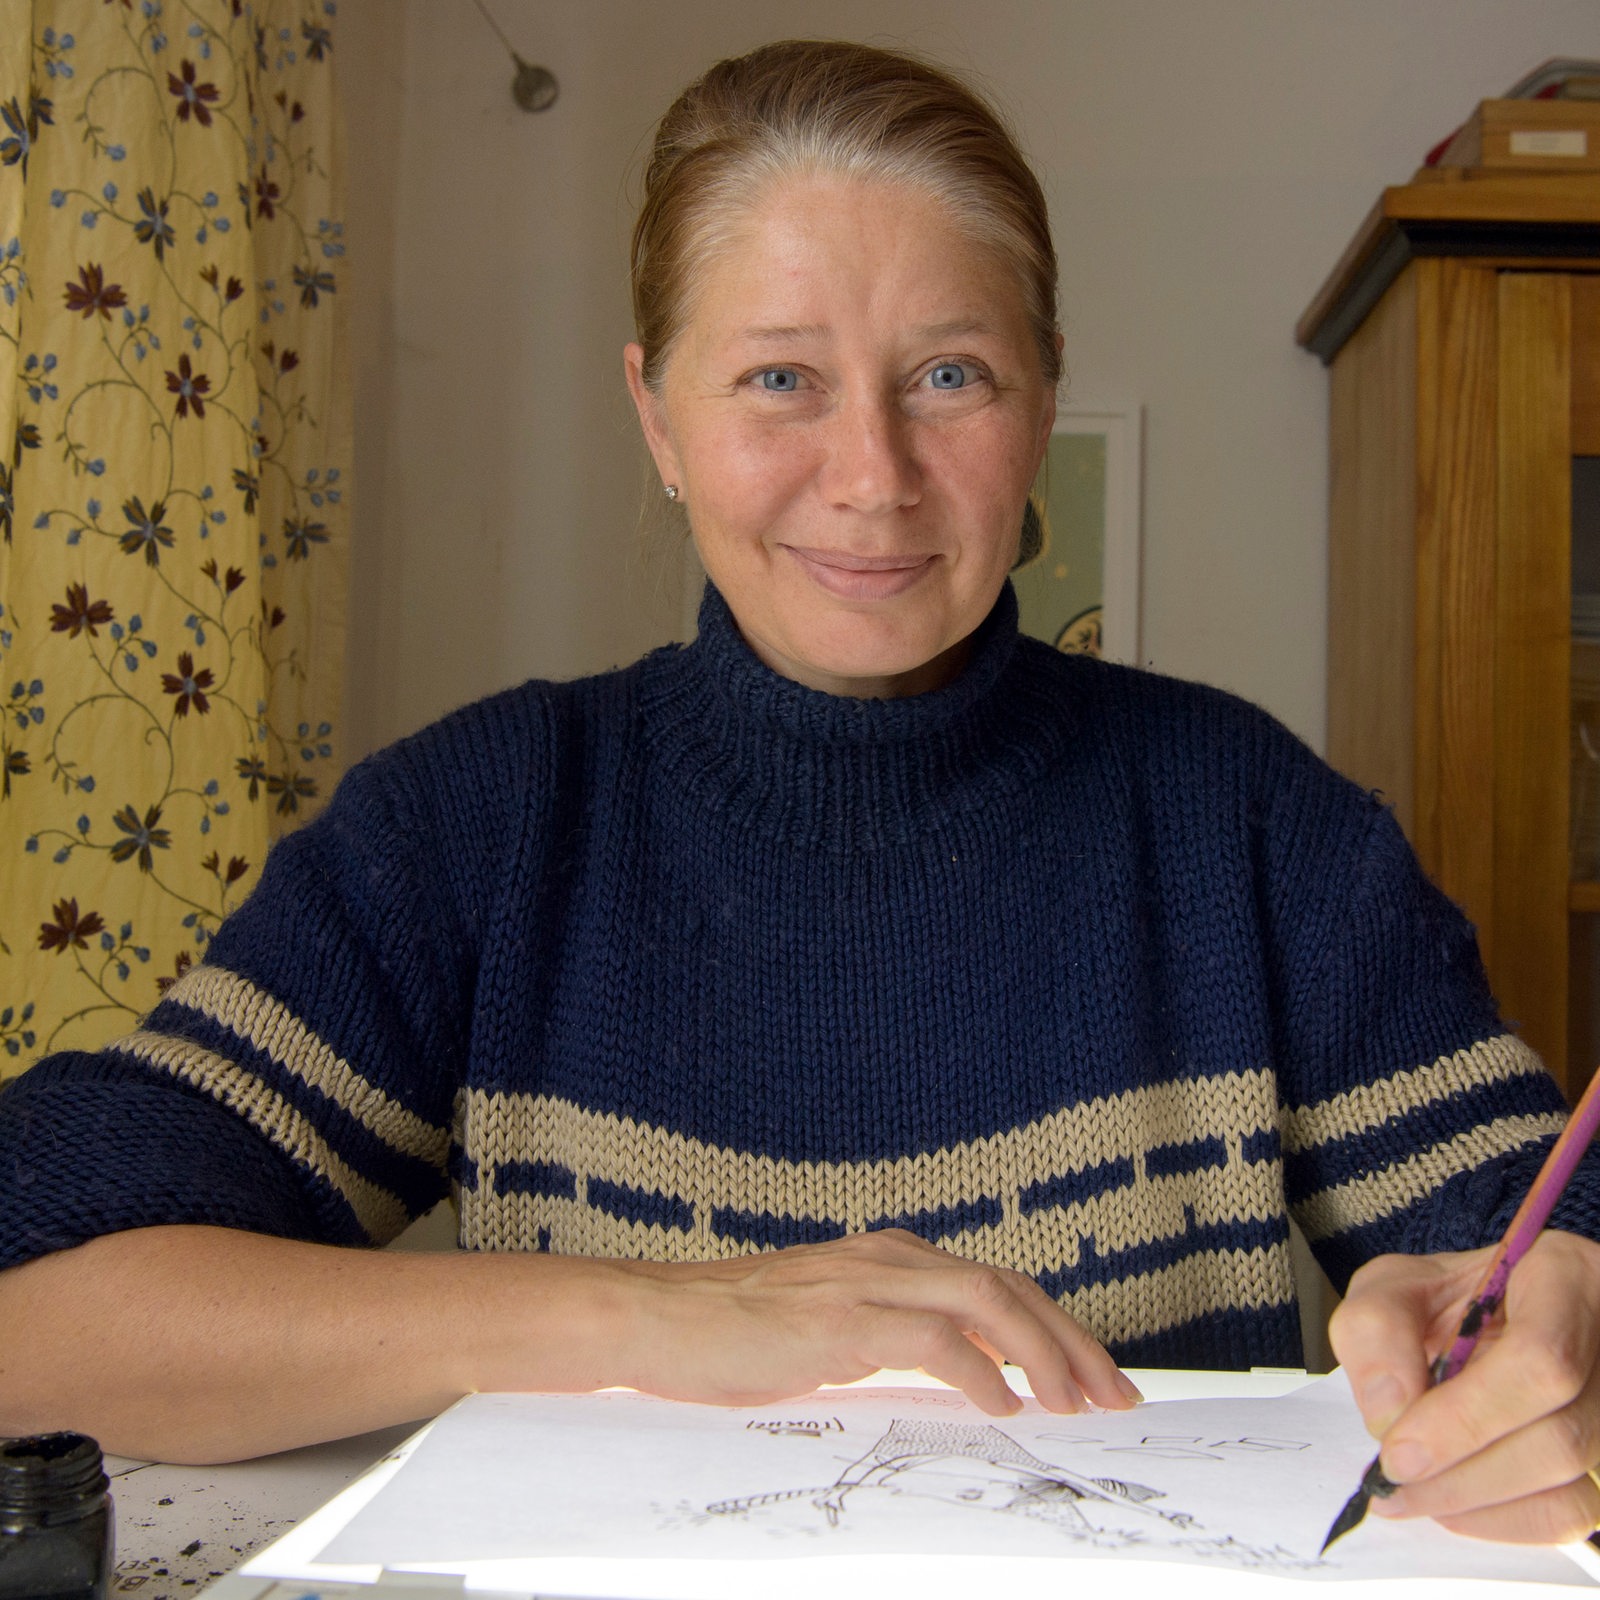 Kat Menschik, Illustratorin und Zeichnerin, zeichnet in ihrem Büro auf einem Leuchttisch